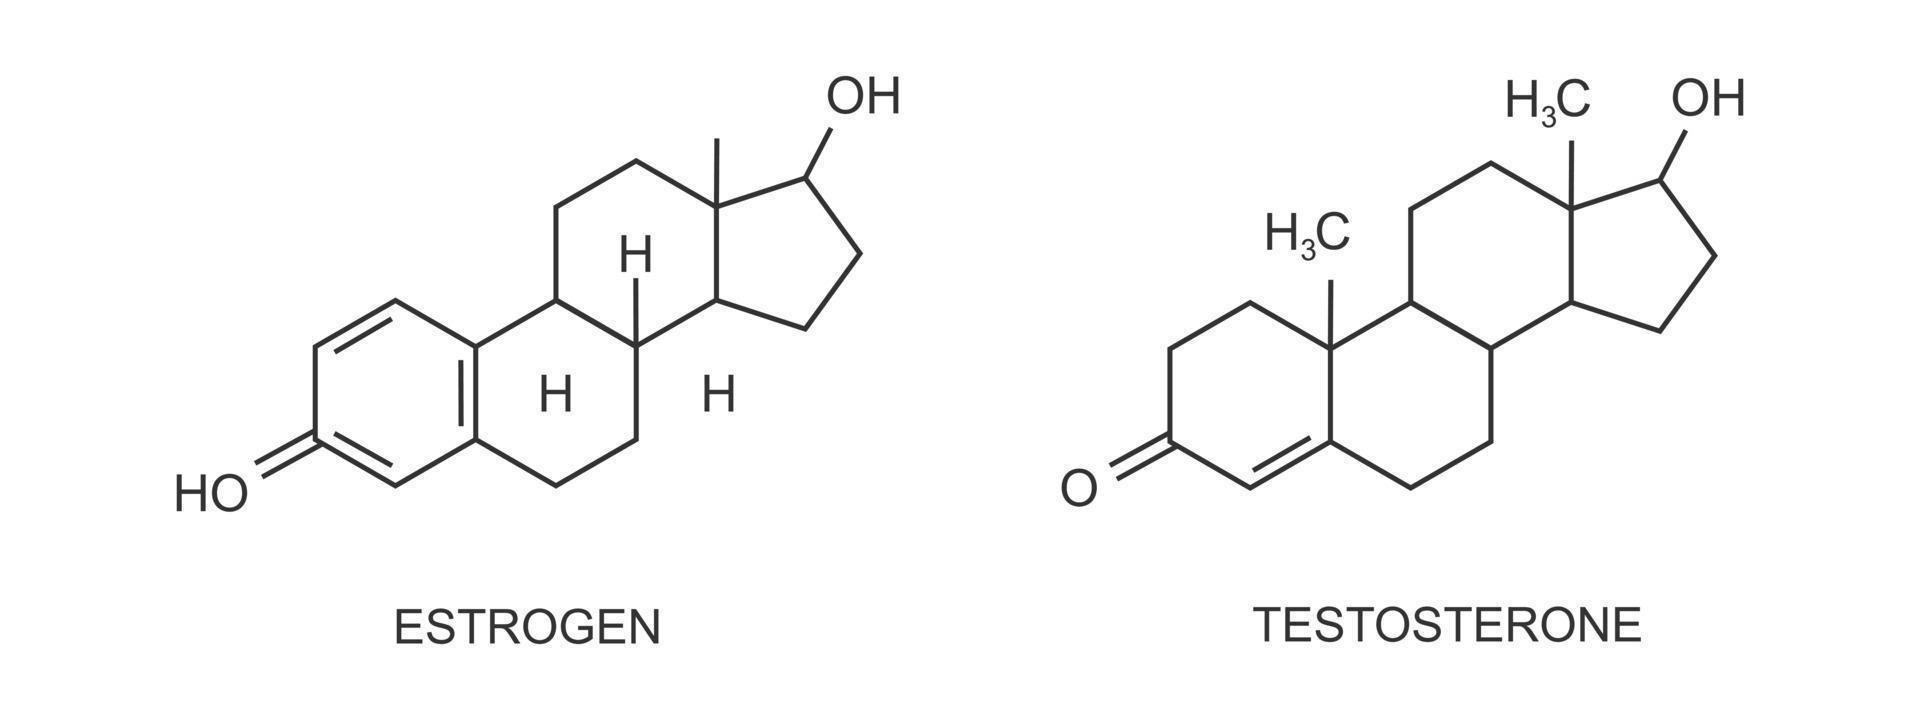 estrógeno y progesterona iconos hembra reproductivo sexo hormonas químico molecular estructura. esteroides de menstrual ciclo, pubertad, ovario y el embarazo vector